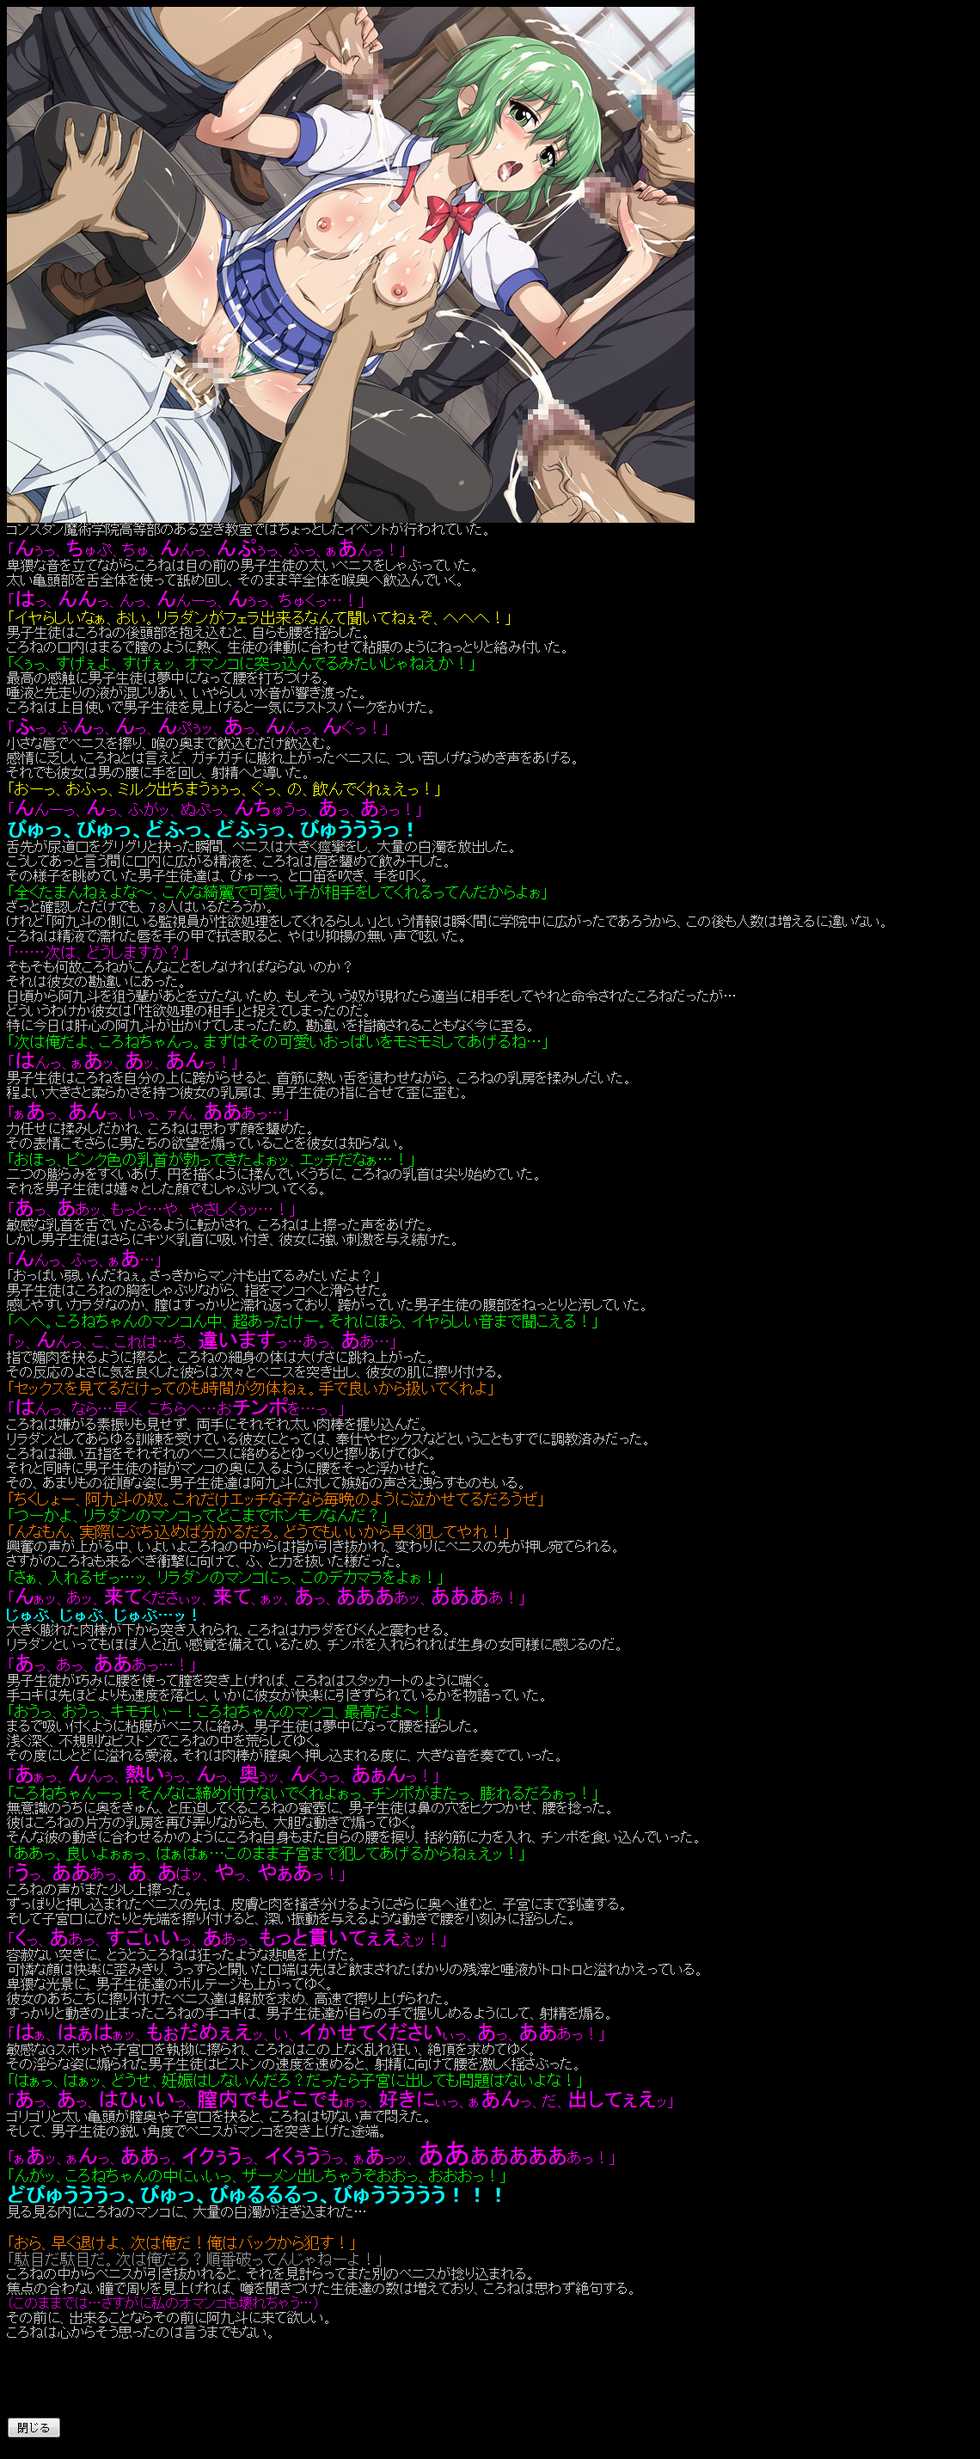 [LolitaChannel (Arigase Shinji)] Yuumei Chara Kannou Shousetsu CG Shuu No. 157!! Ichiban Ushiro ○ Daimaou HaaHaa CG Shuu (Ichiban Ushiro no Daimaou) - Page 8